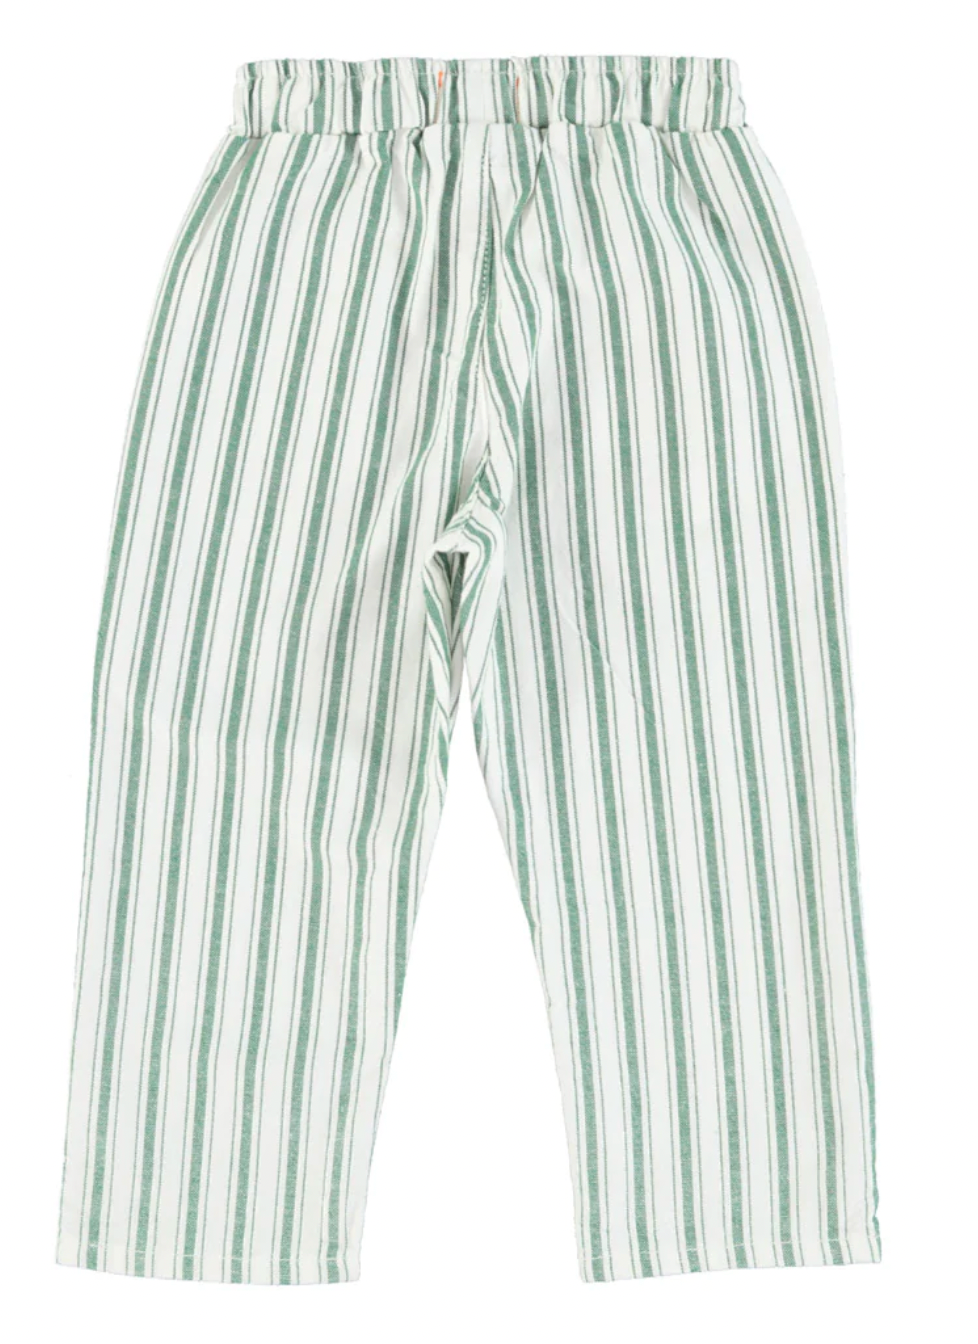 Pantalon unisexe rayé - vert/blanc